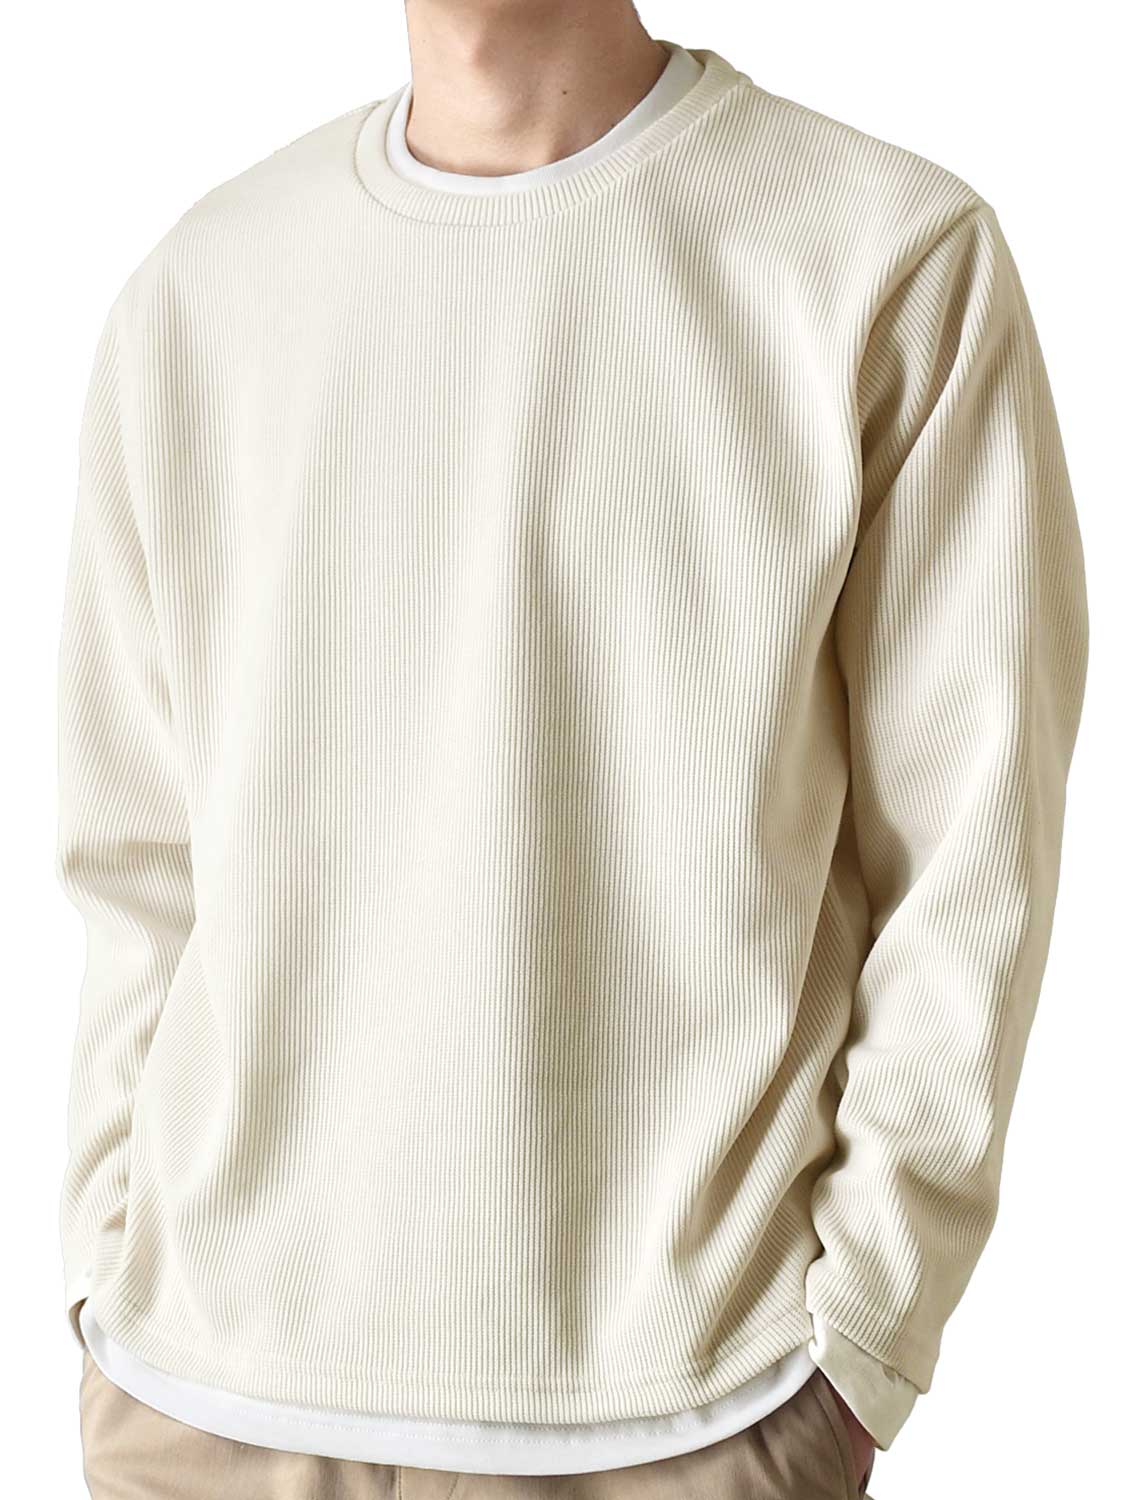 カットソー Tシャツ アンサンブル 長袖 2枚セット メンズ 重ね着 レイヤード 送料無料 通販YC